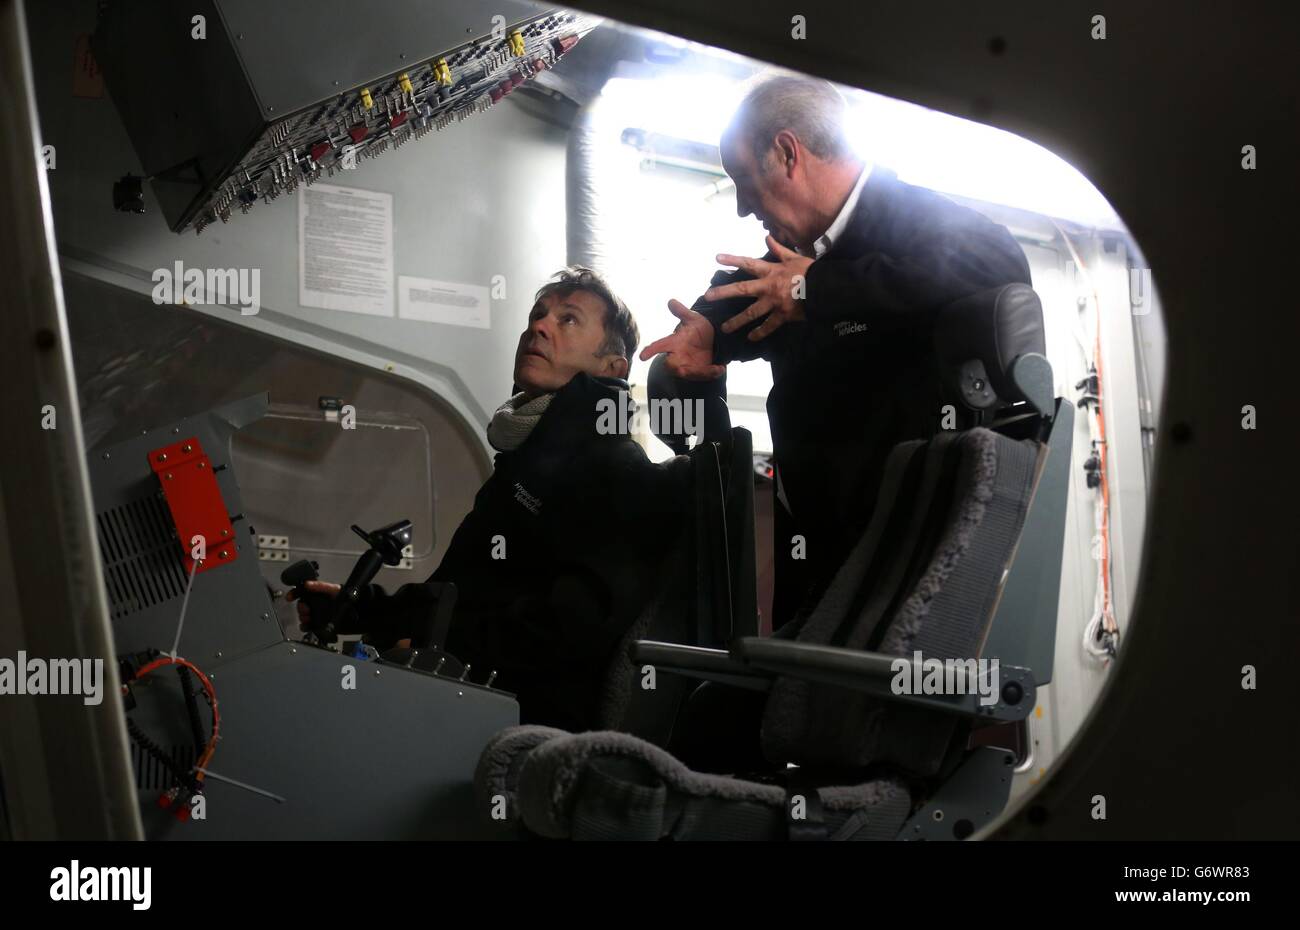 L'uomo anteriore di Iron Maiden Bruce Dickinson chiacchiera con il pilota David Burns all'interno dell'abitacolo del più grande velivolo del mondo conosciuto come HAV304, al suo lancio a Cardington Hanger nel Bedfordshire. Foto Stock